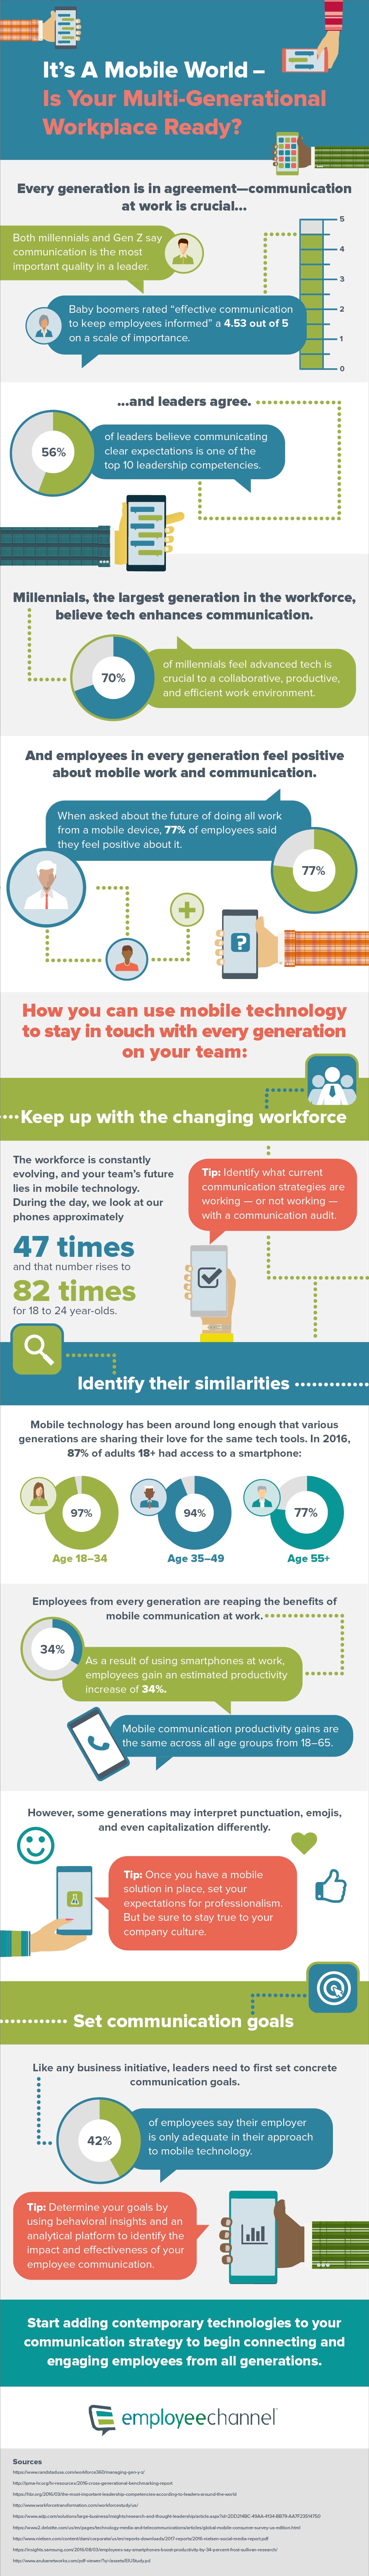 Employeechannel_infographic_972